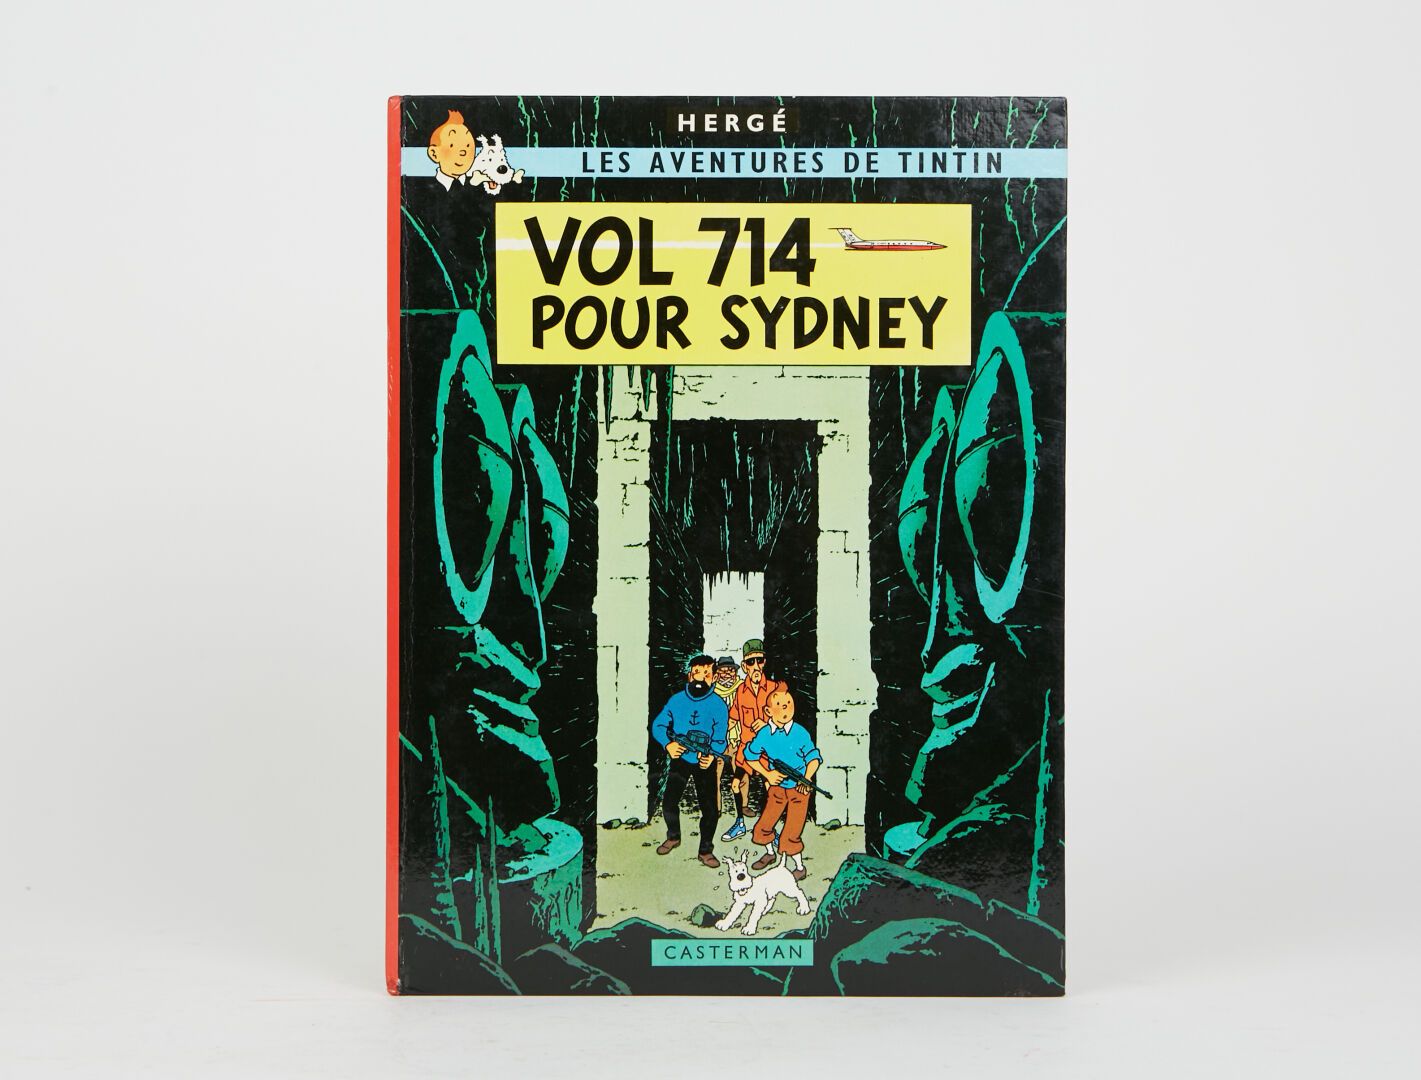 Null "Vol 714 pour Sydney" E.O. 1968
Dos carré imprimé. Avec page 42 : "Allez-vo&hellip;